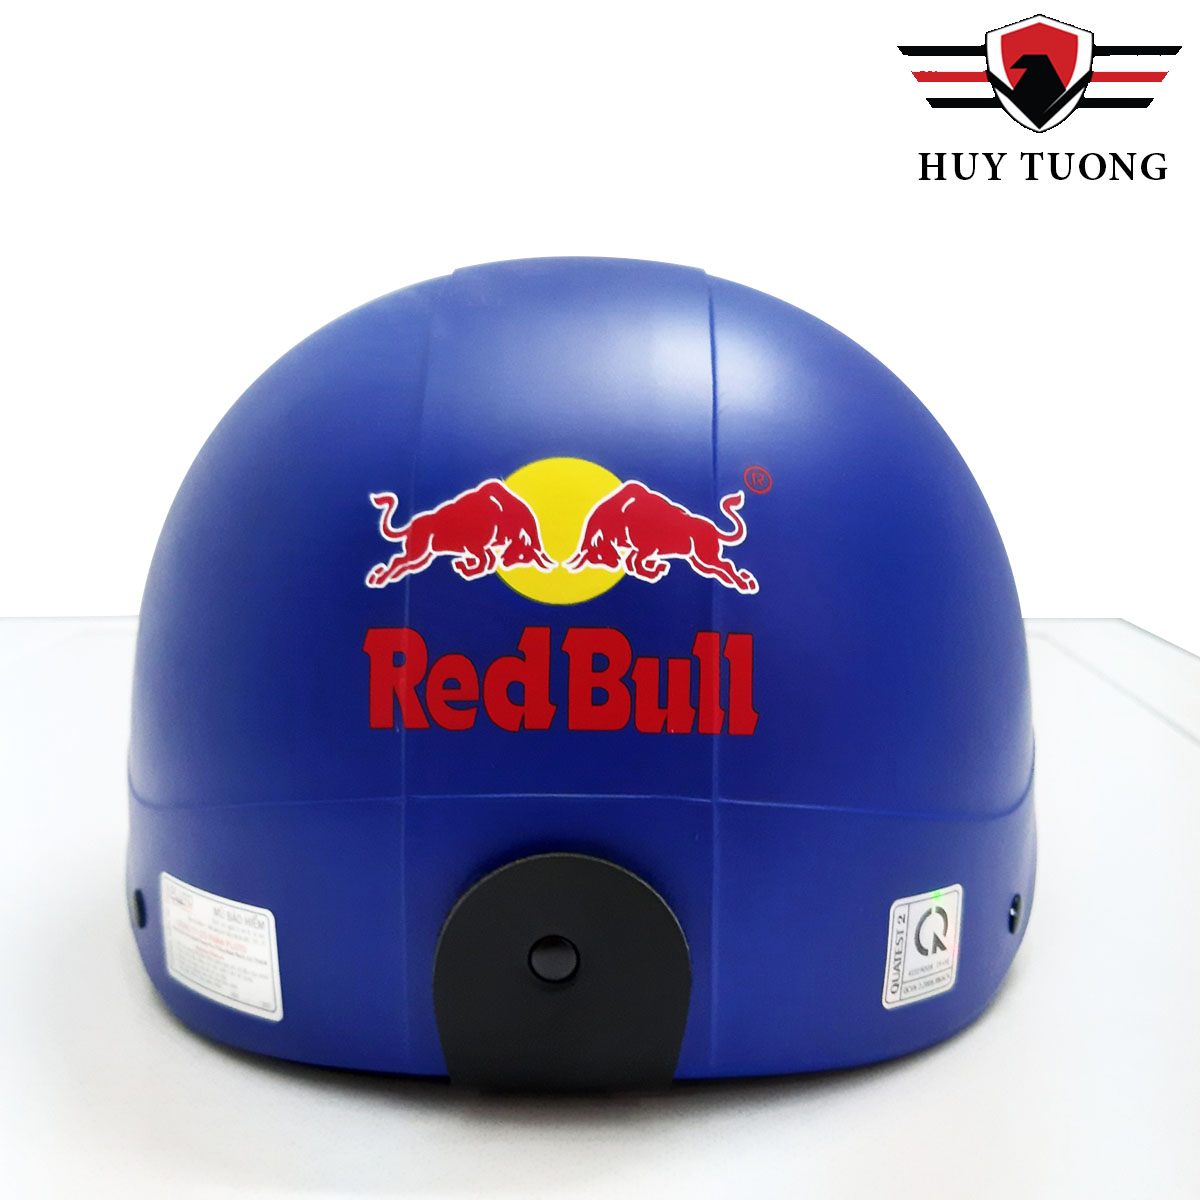 Nón bảo hiểm sơn Red Bull thể thao cao cấp - Huy Tưởng